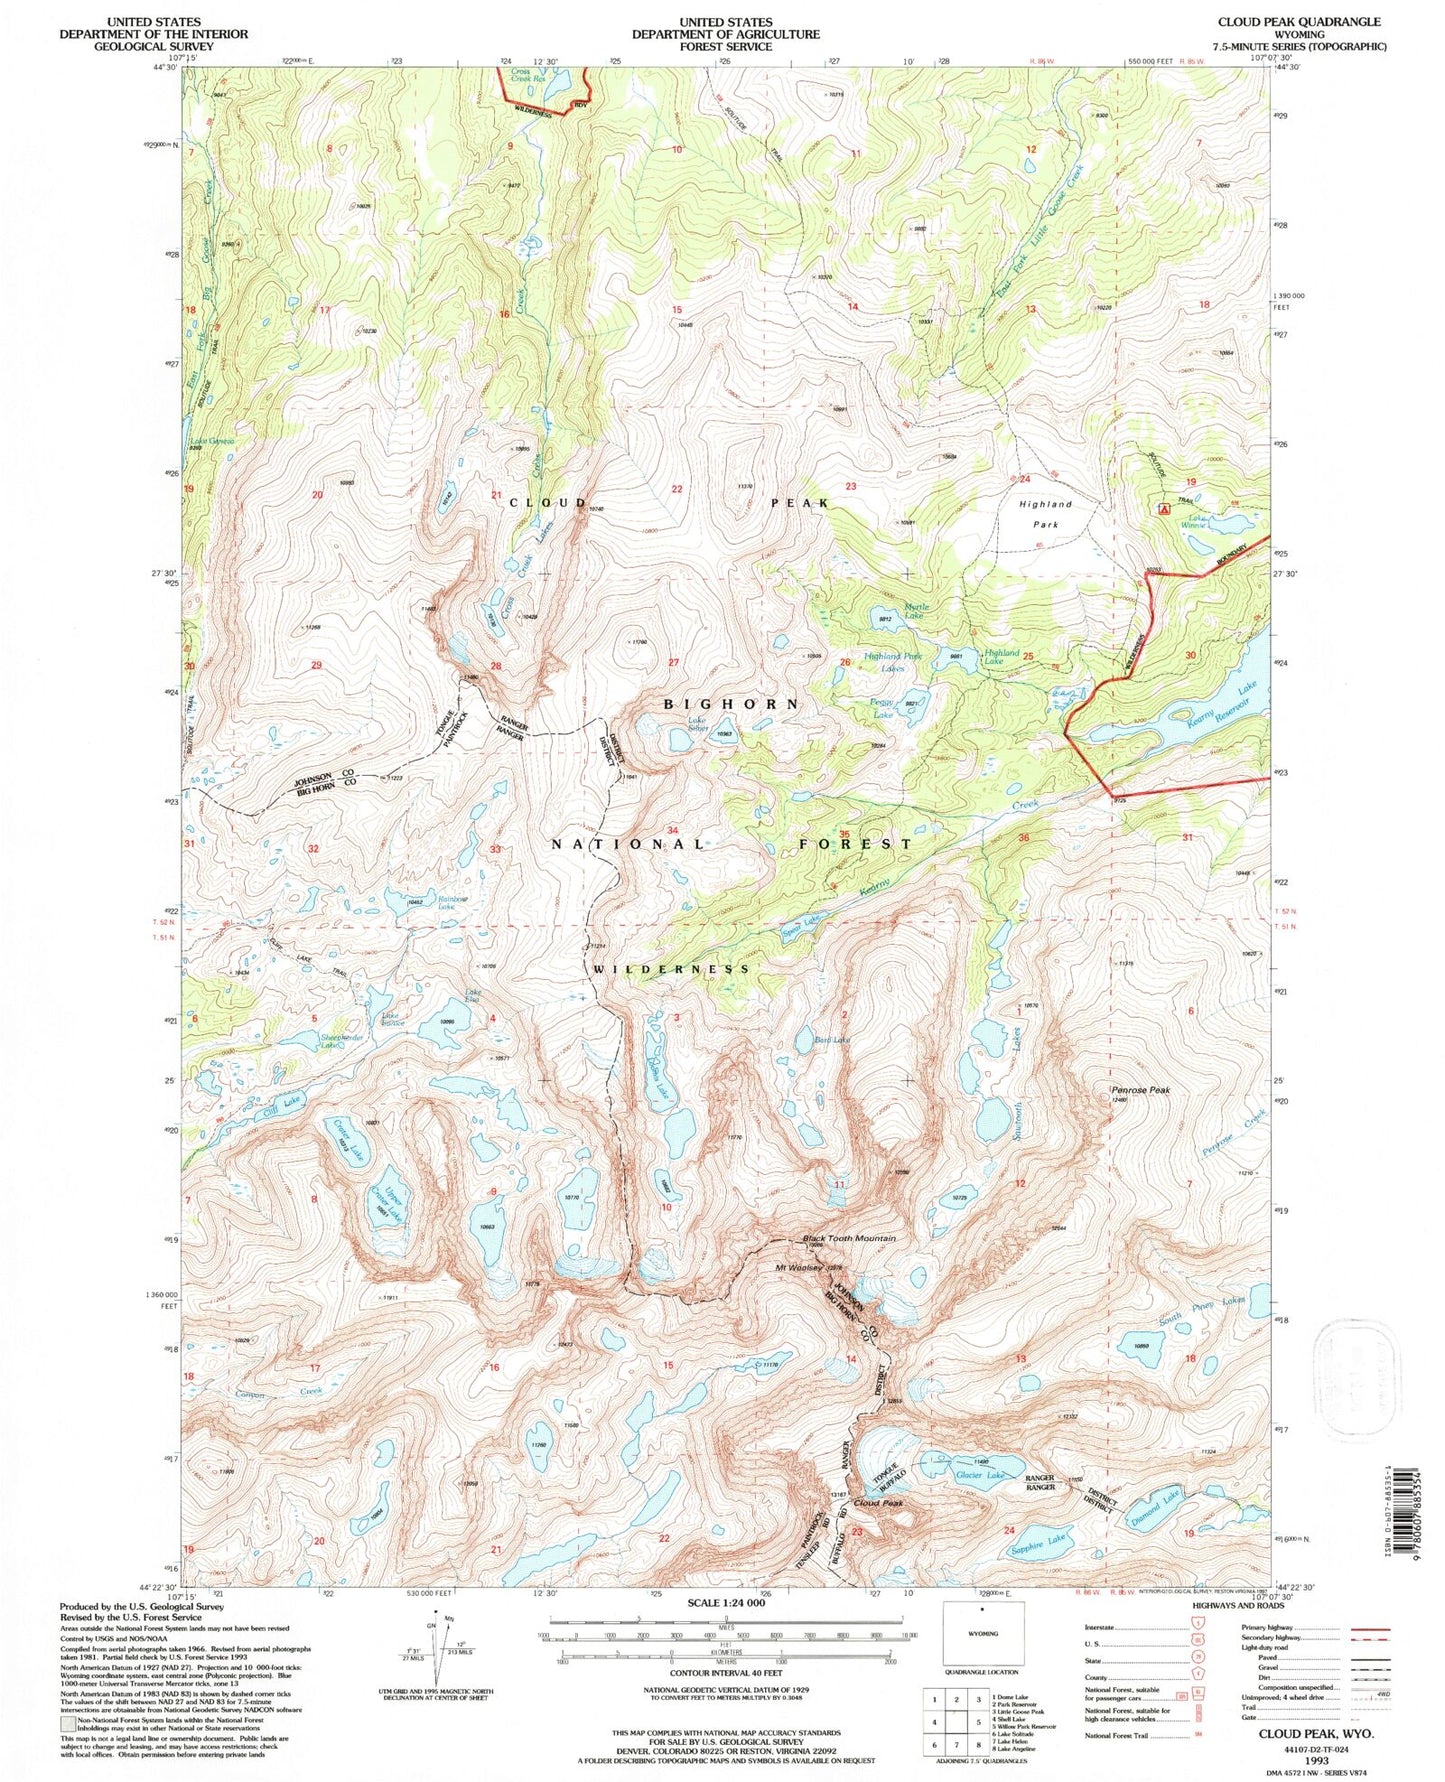 USGS Classic Cloud Peak Wyoming 7.5'x7.5' Topo Map Image